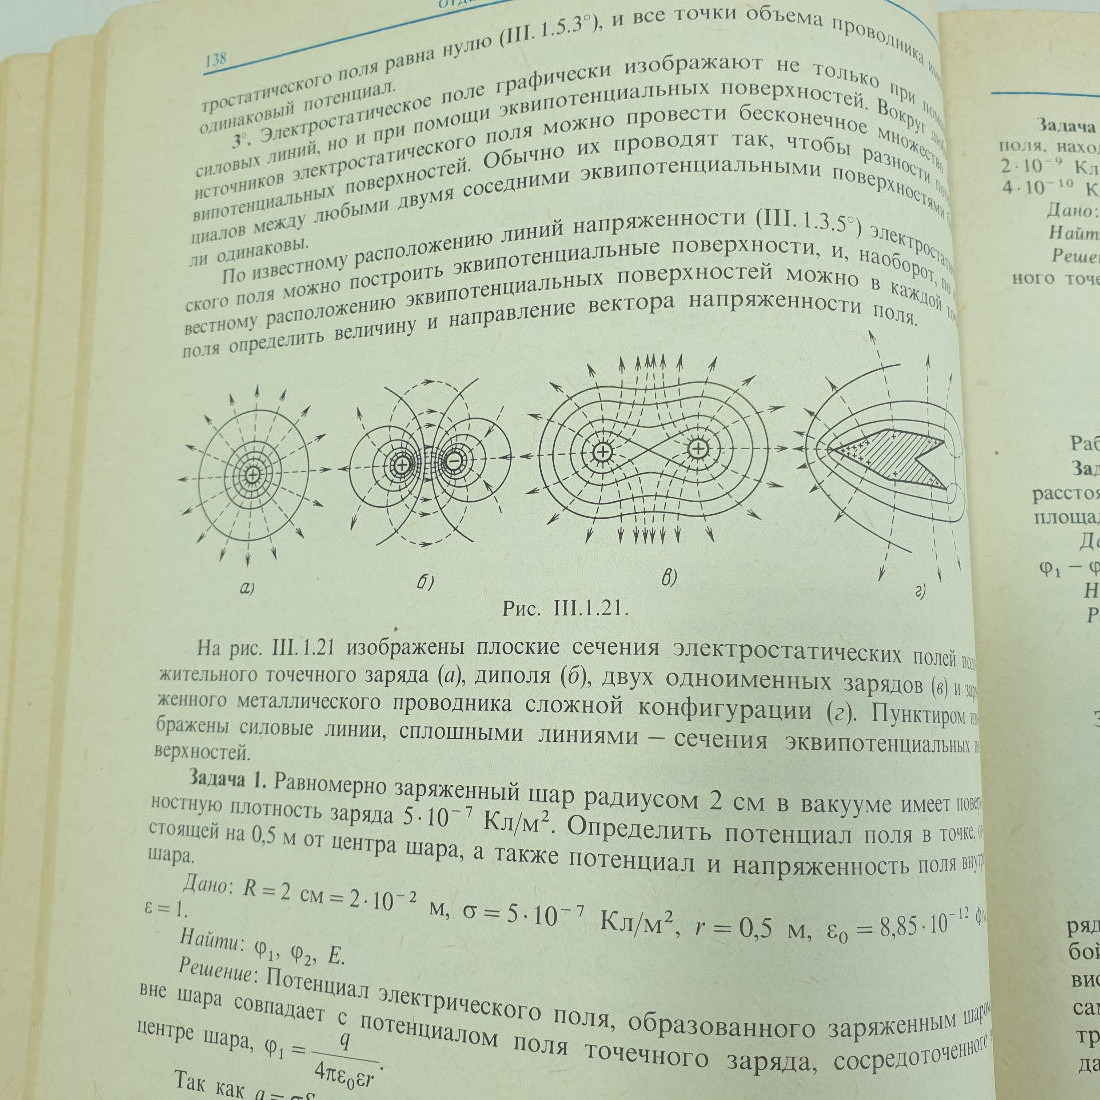 Б.М. Яворский, Ю.А. Селезнёв "Справочное руководство по физике". Картинка 14